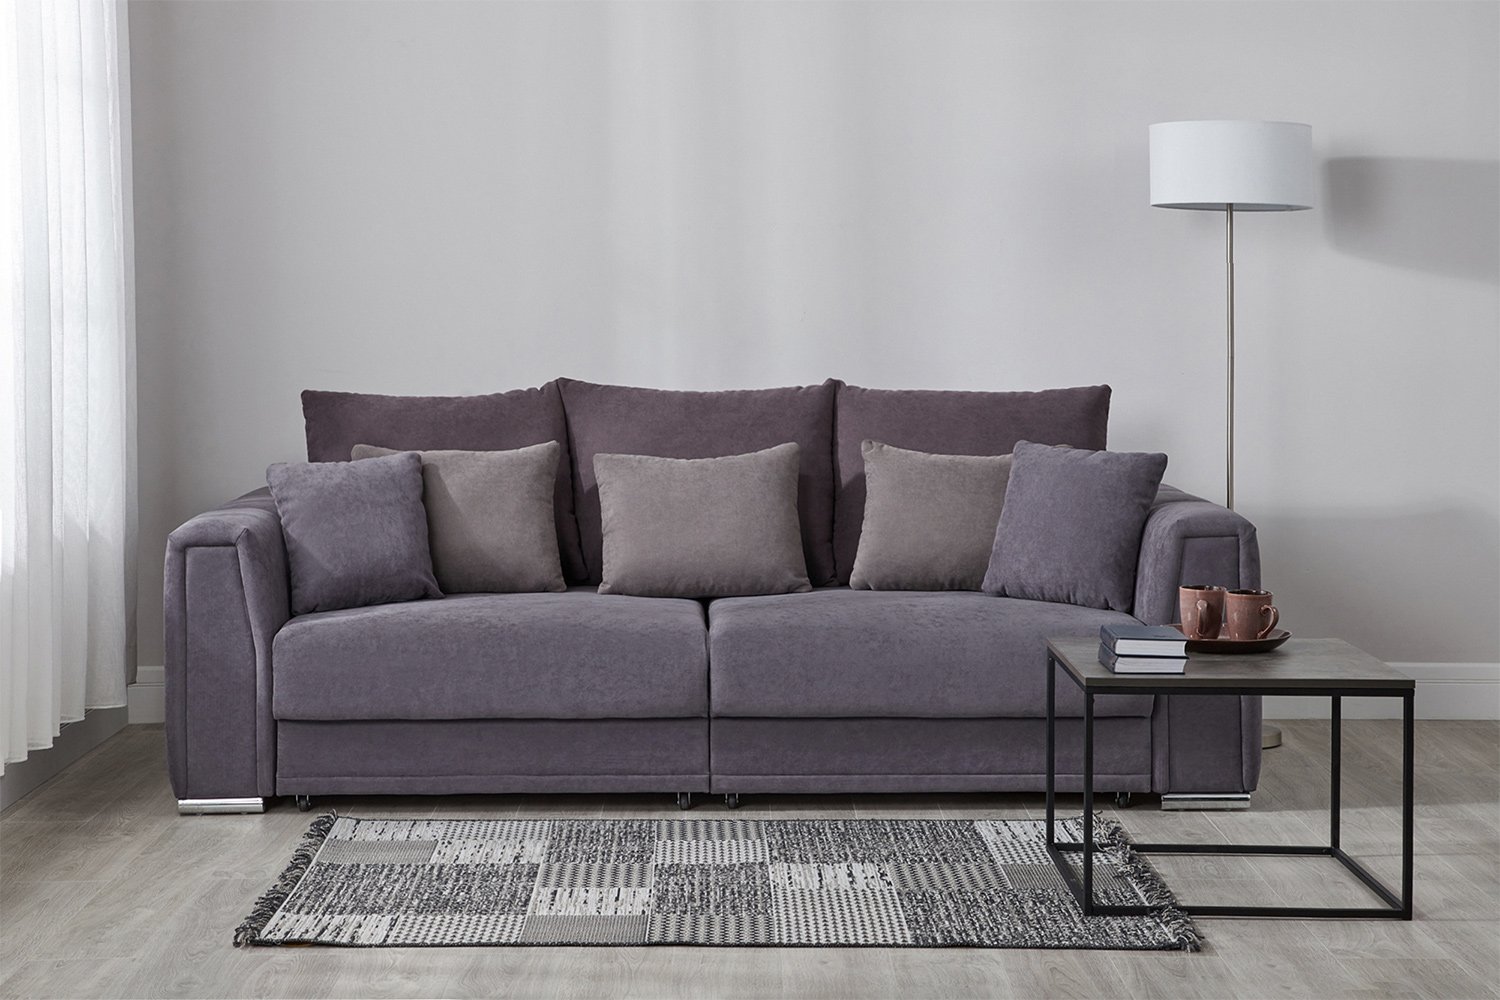 черный диван с фиолетовыми подушками